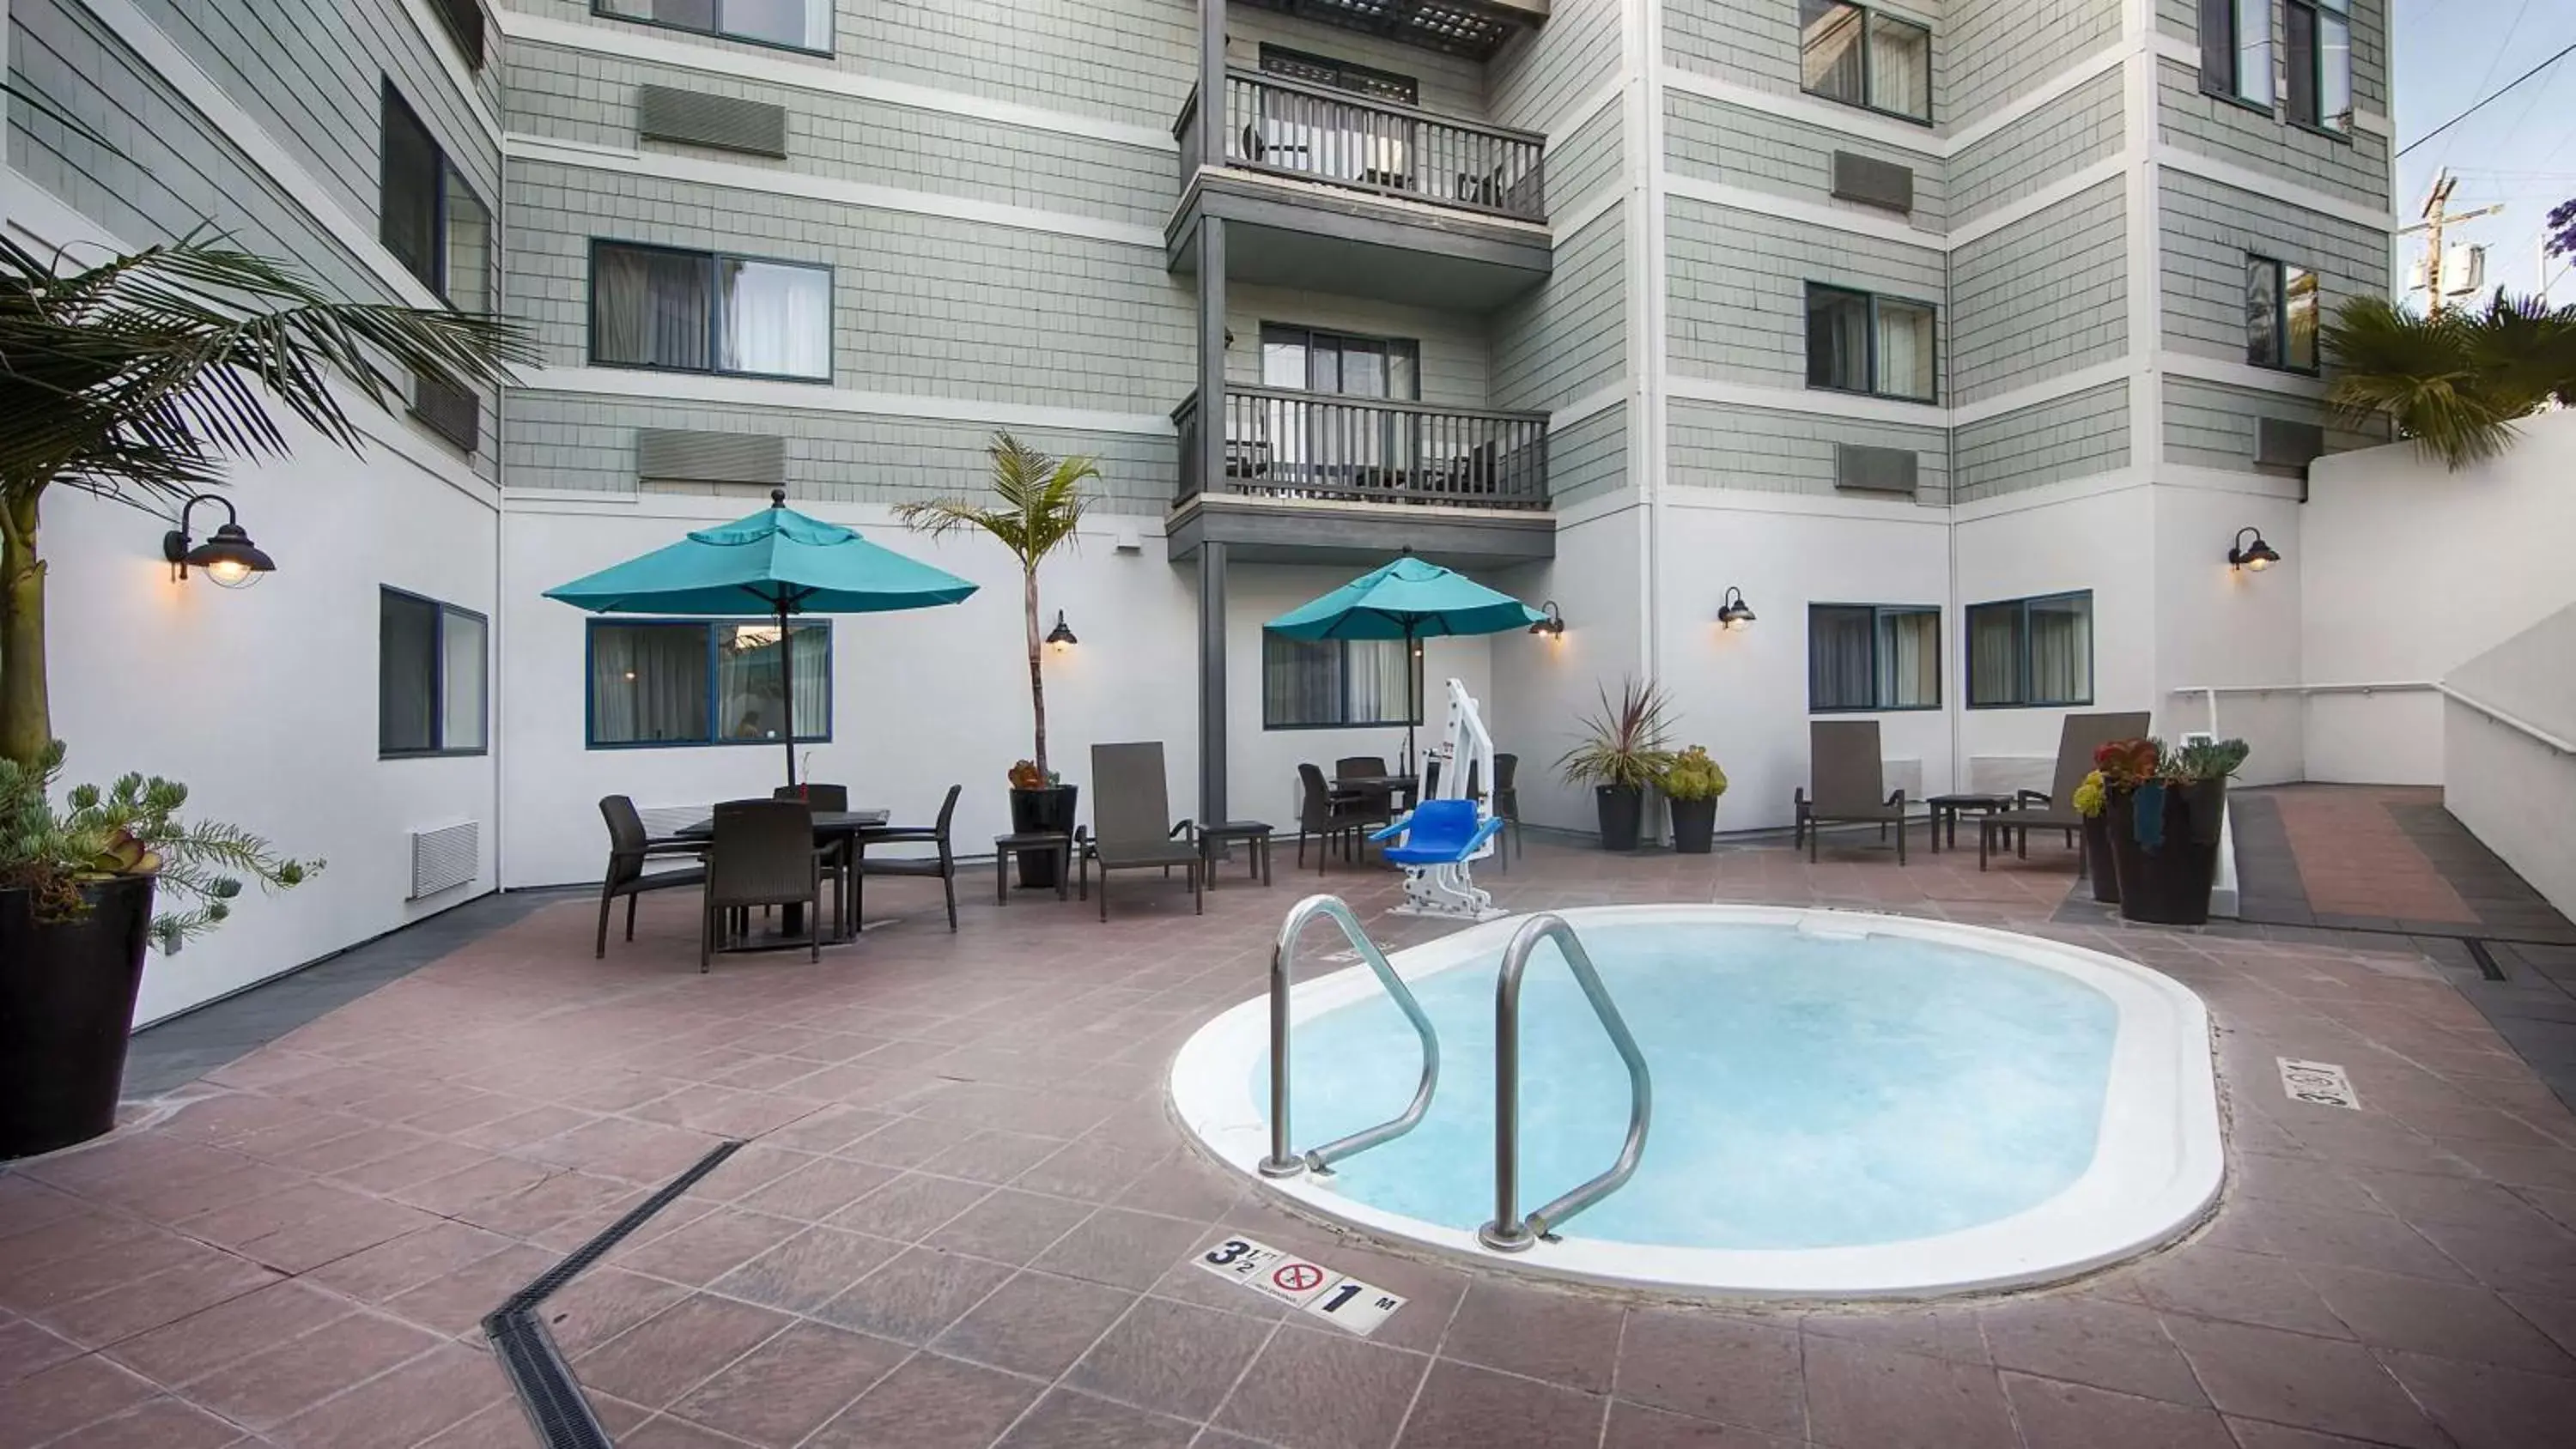 Patio, Swimming Pool in Best Western Plus All Suites Inn